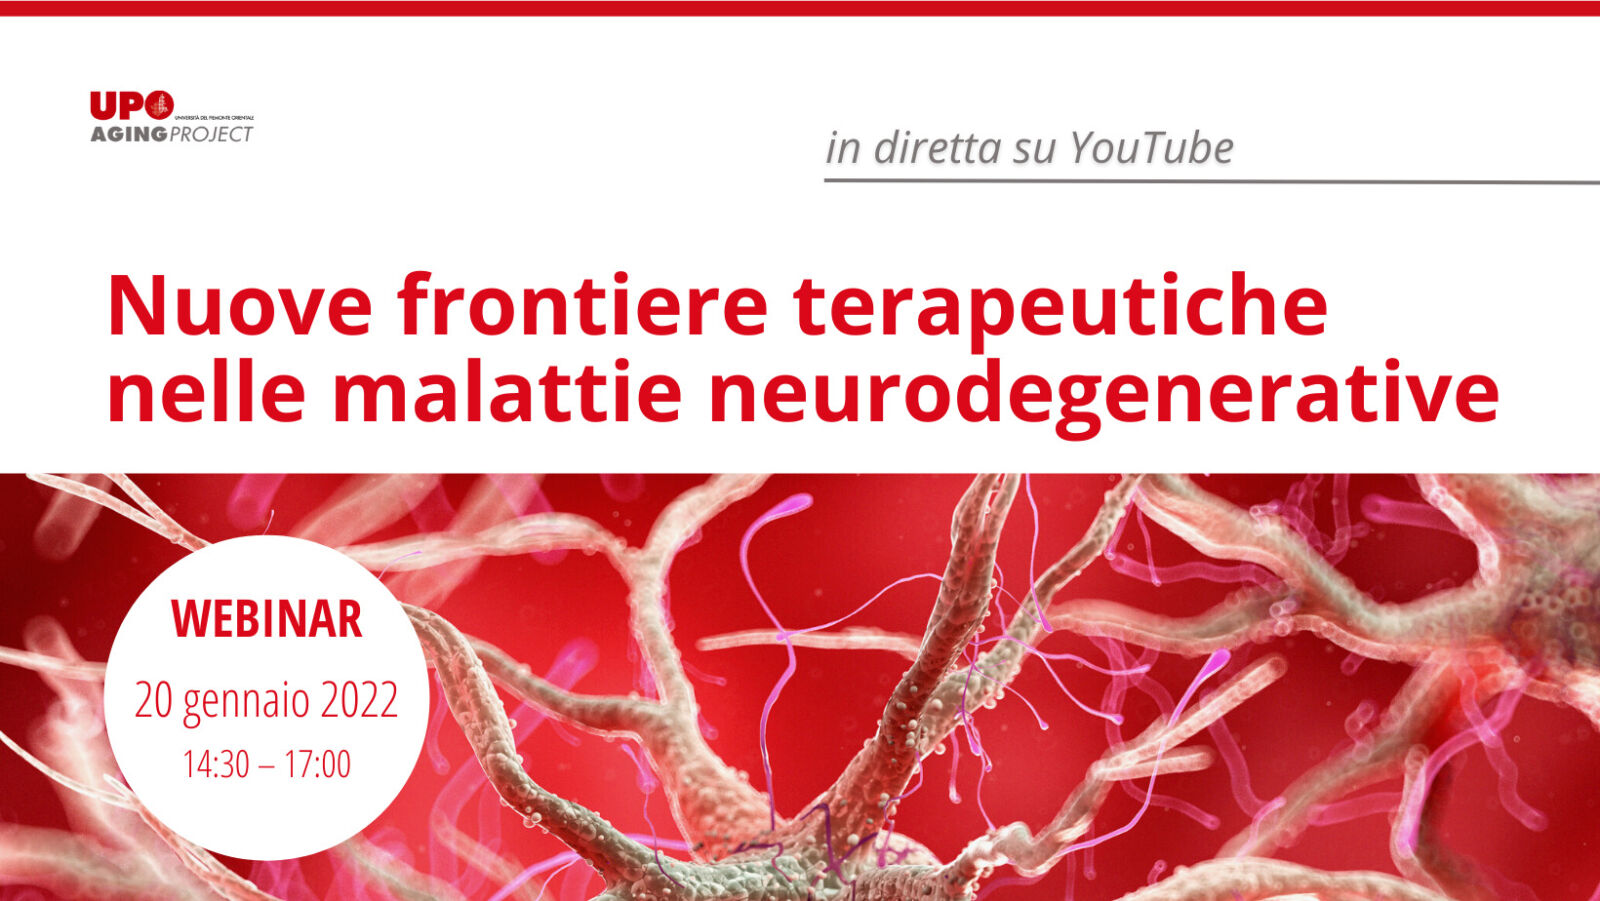 Nuove frontiere terapeutiche nelle malattie neurodegenerative - Aging Project UniUPO